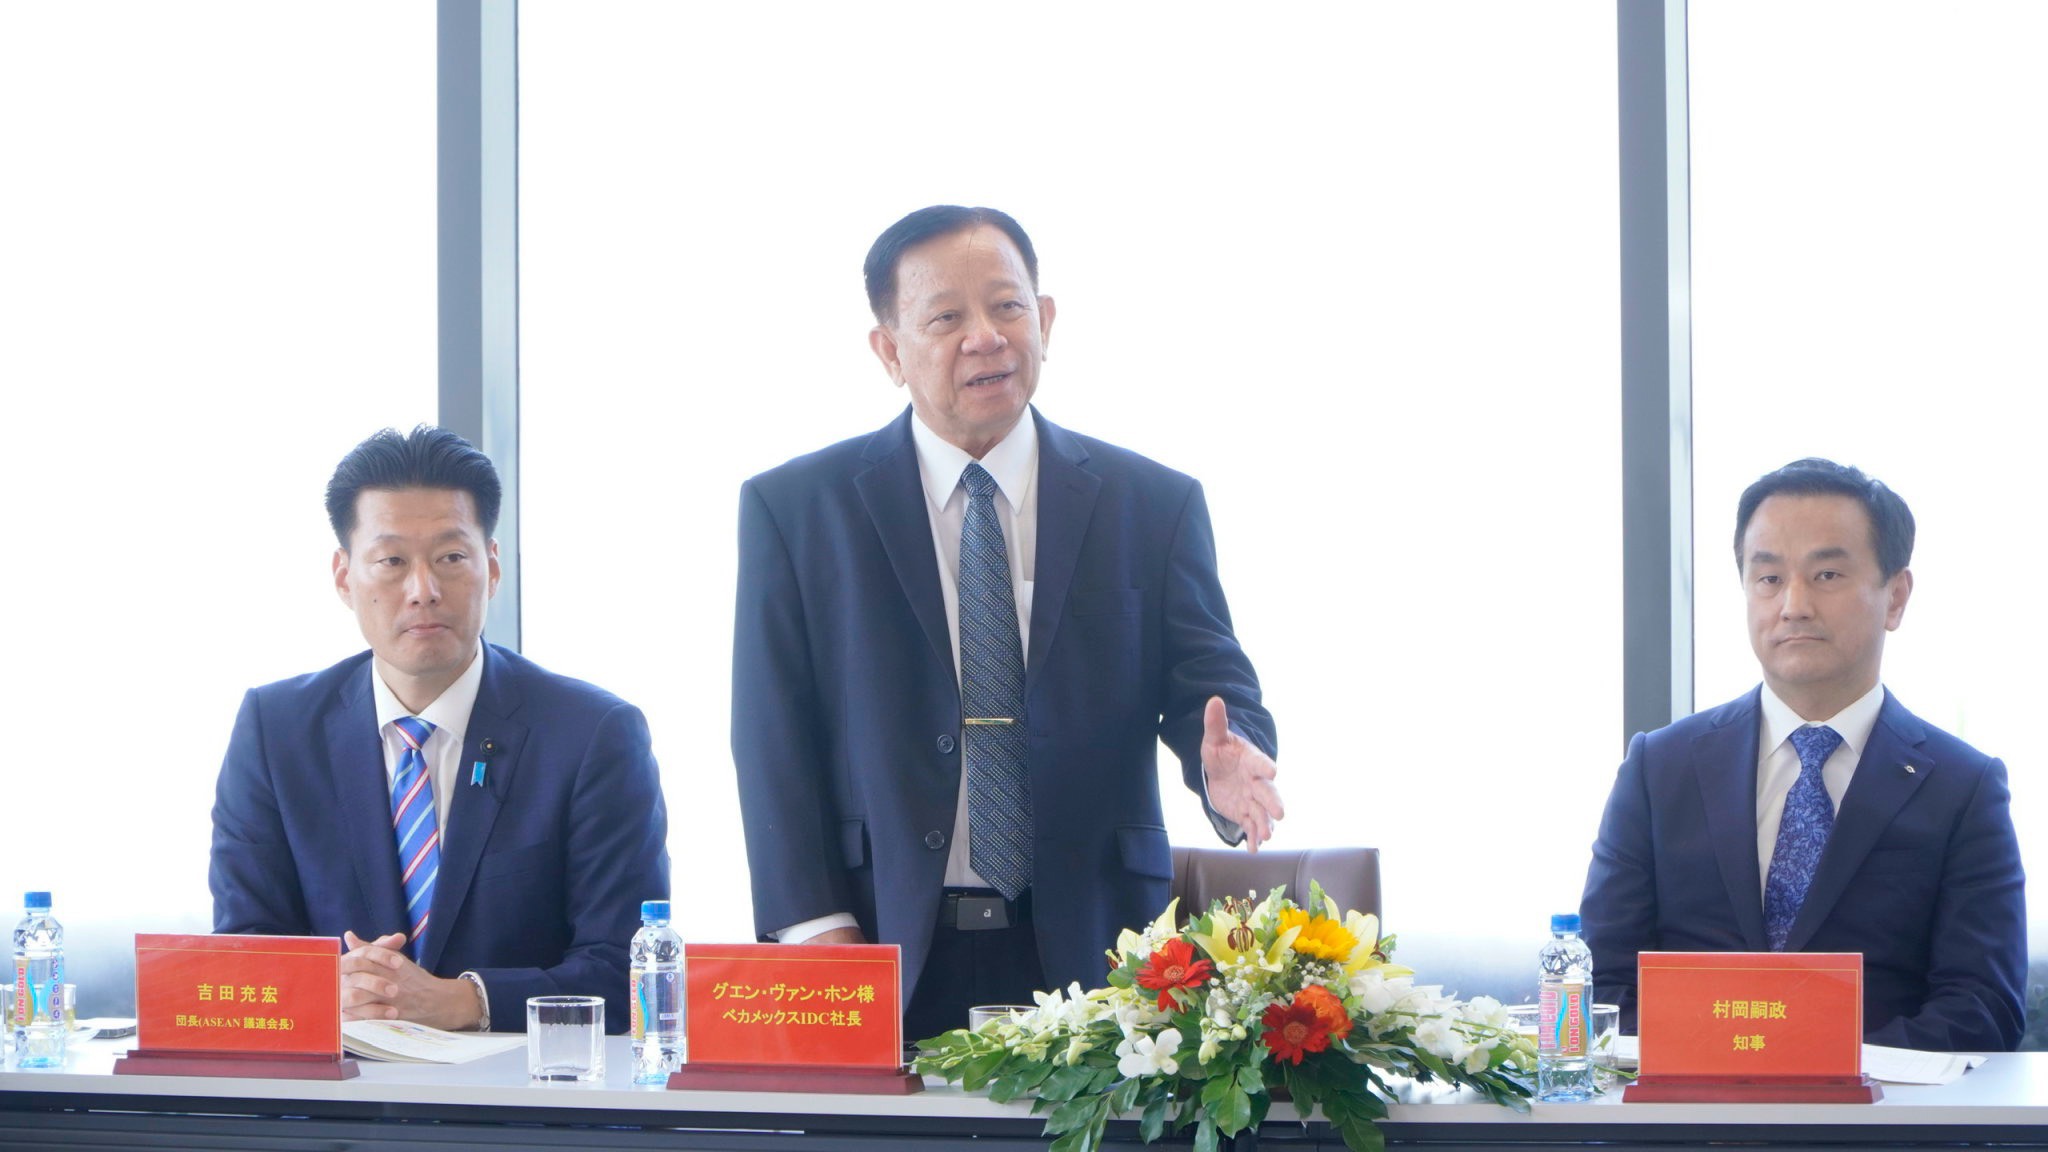 Đồng chí Nguyễn Văn Hùng - Chủ tịch Hội đồng quản trị Tổng công ty Becamex IDC phát biểu.